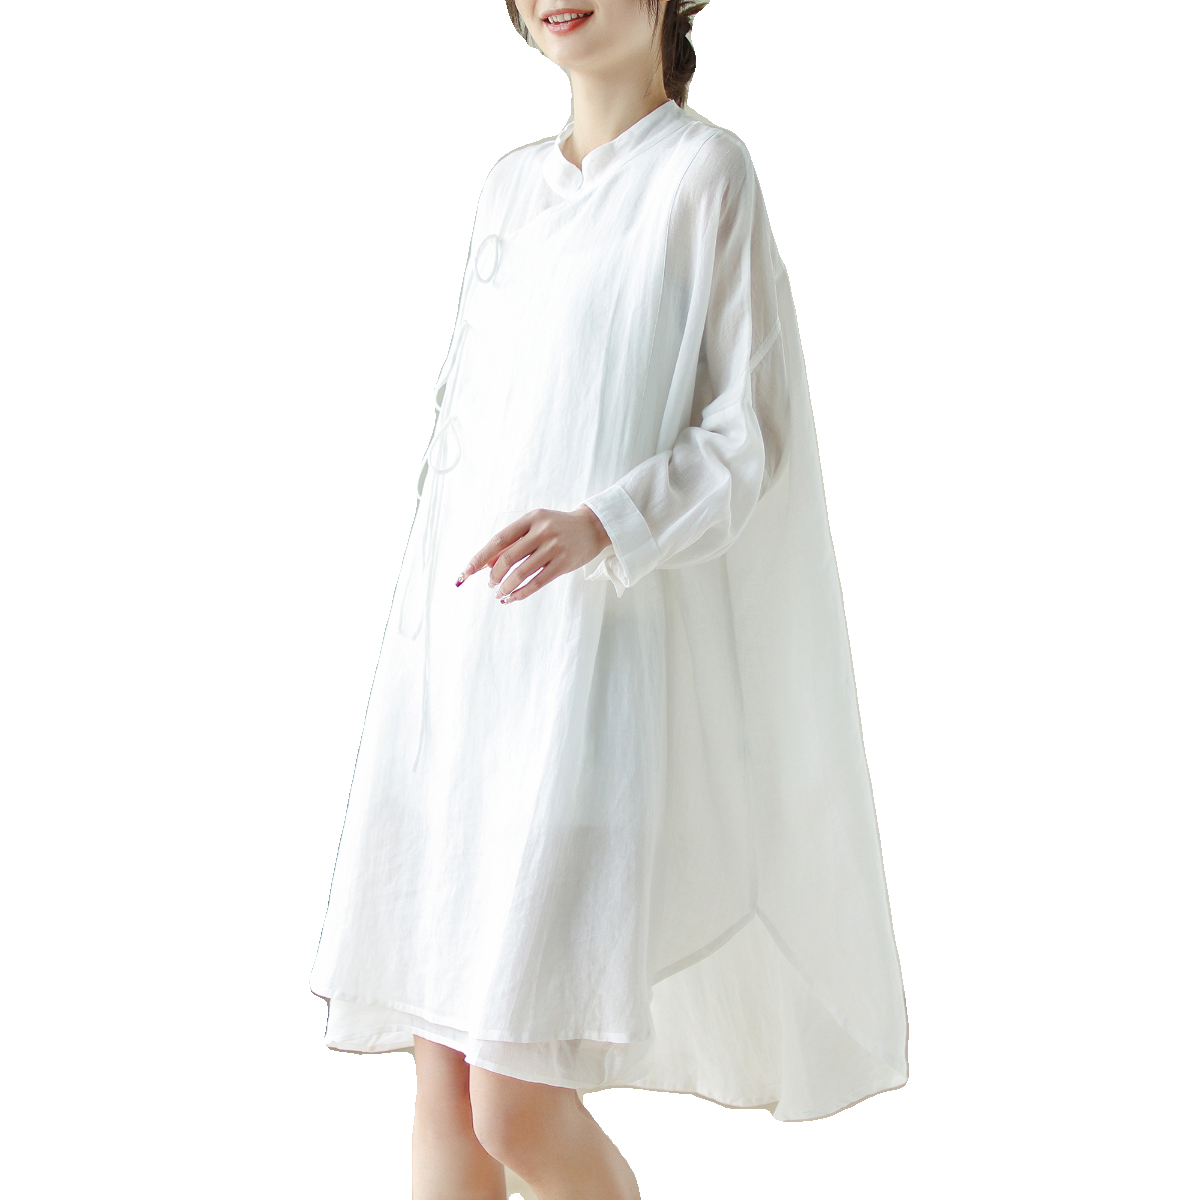 仙气白色棉麻连衣裙女宽松茶服森系中式禅意汉服少女中长款衬衣裙